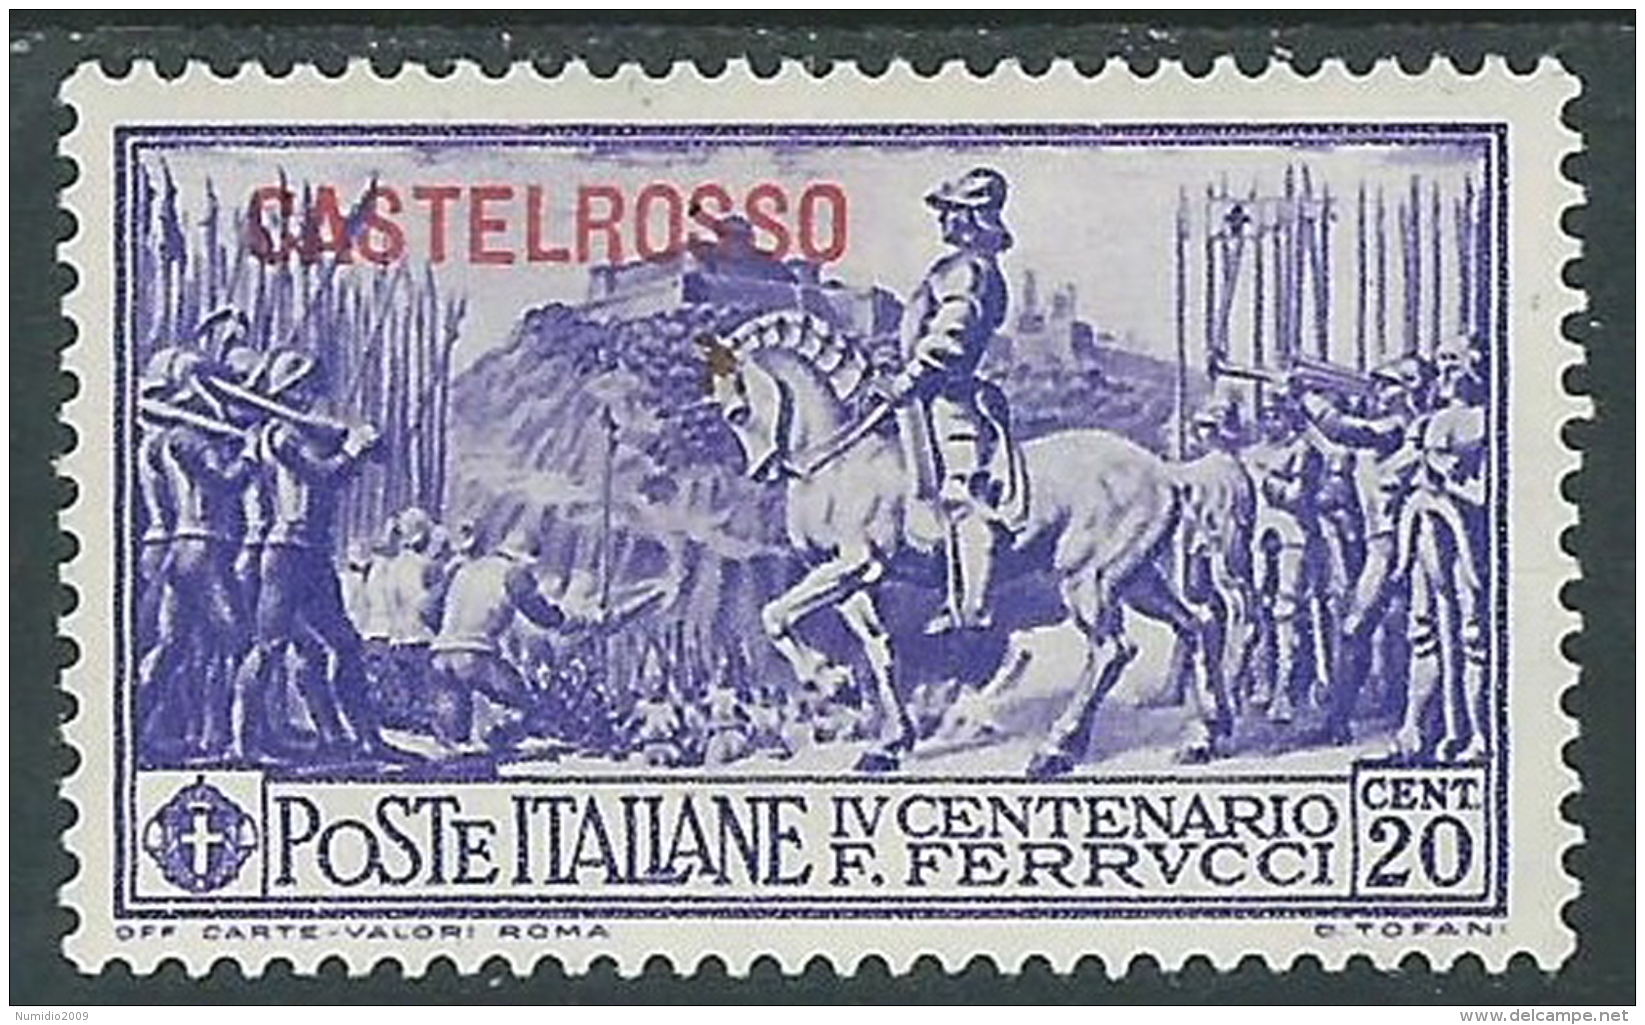 1930 CASTELROSSO FERRUCCI 20 CENT MH * - I41-2 - Castelrosso